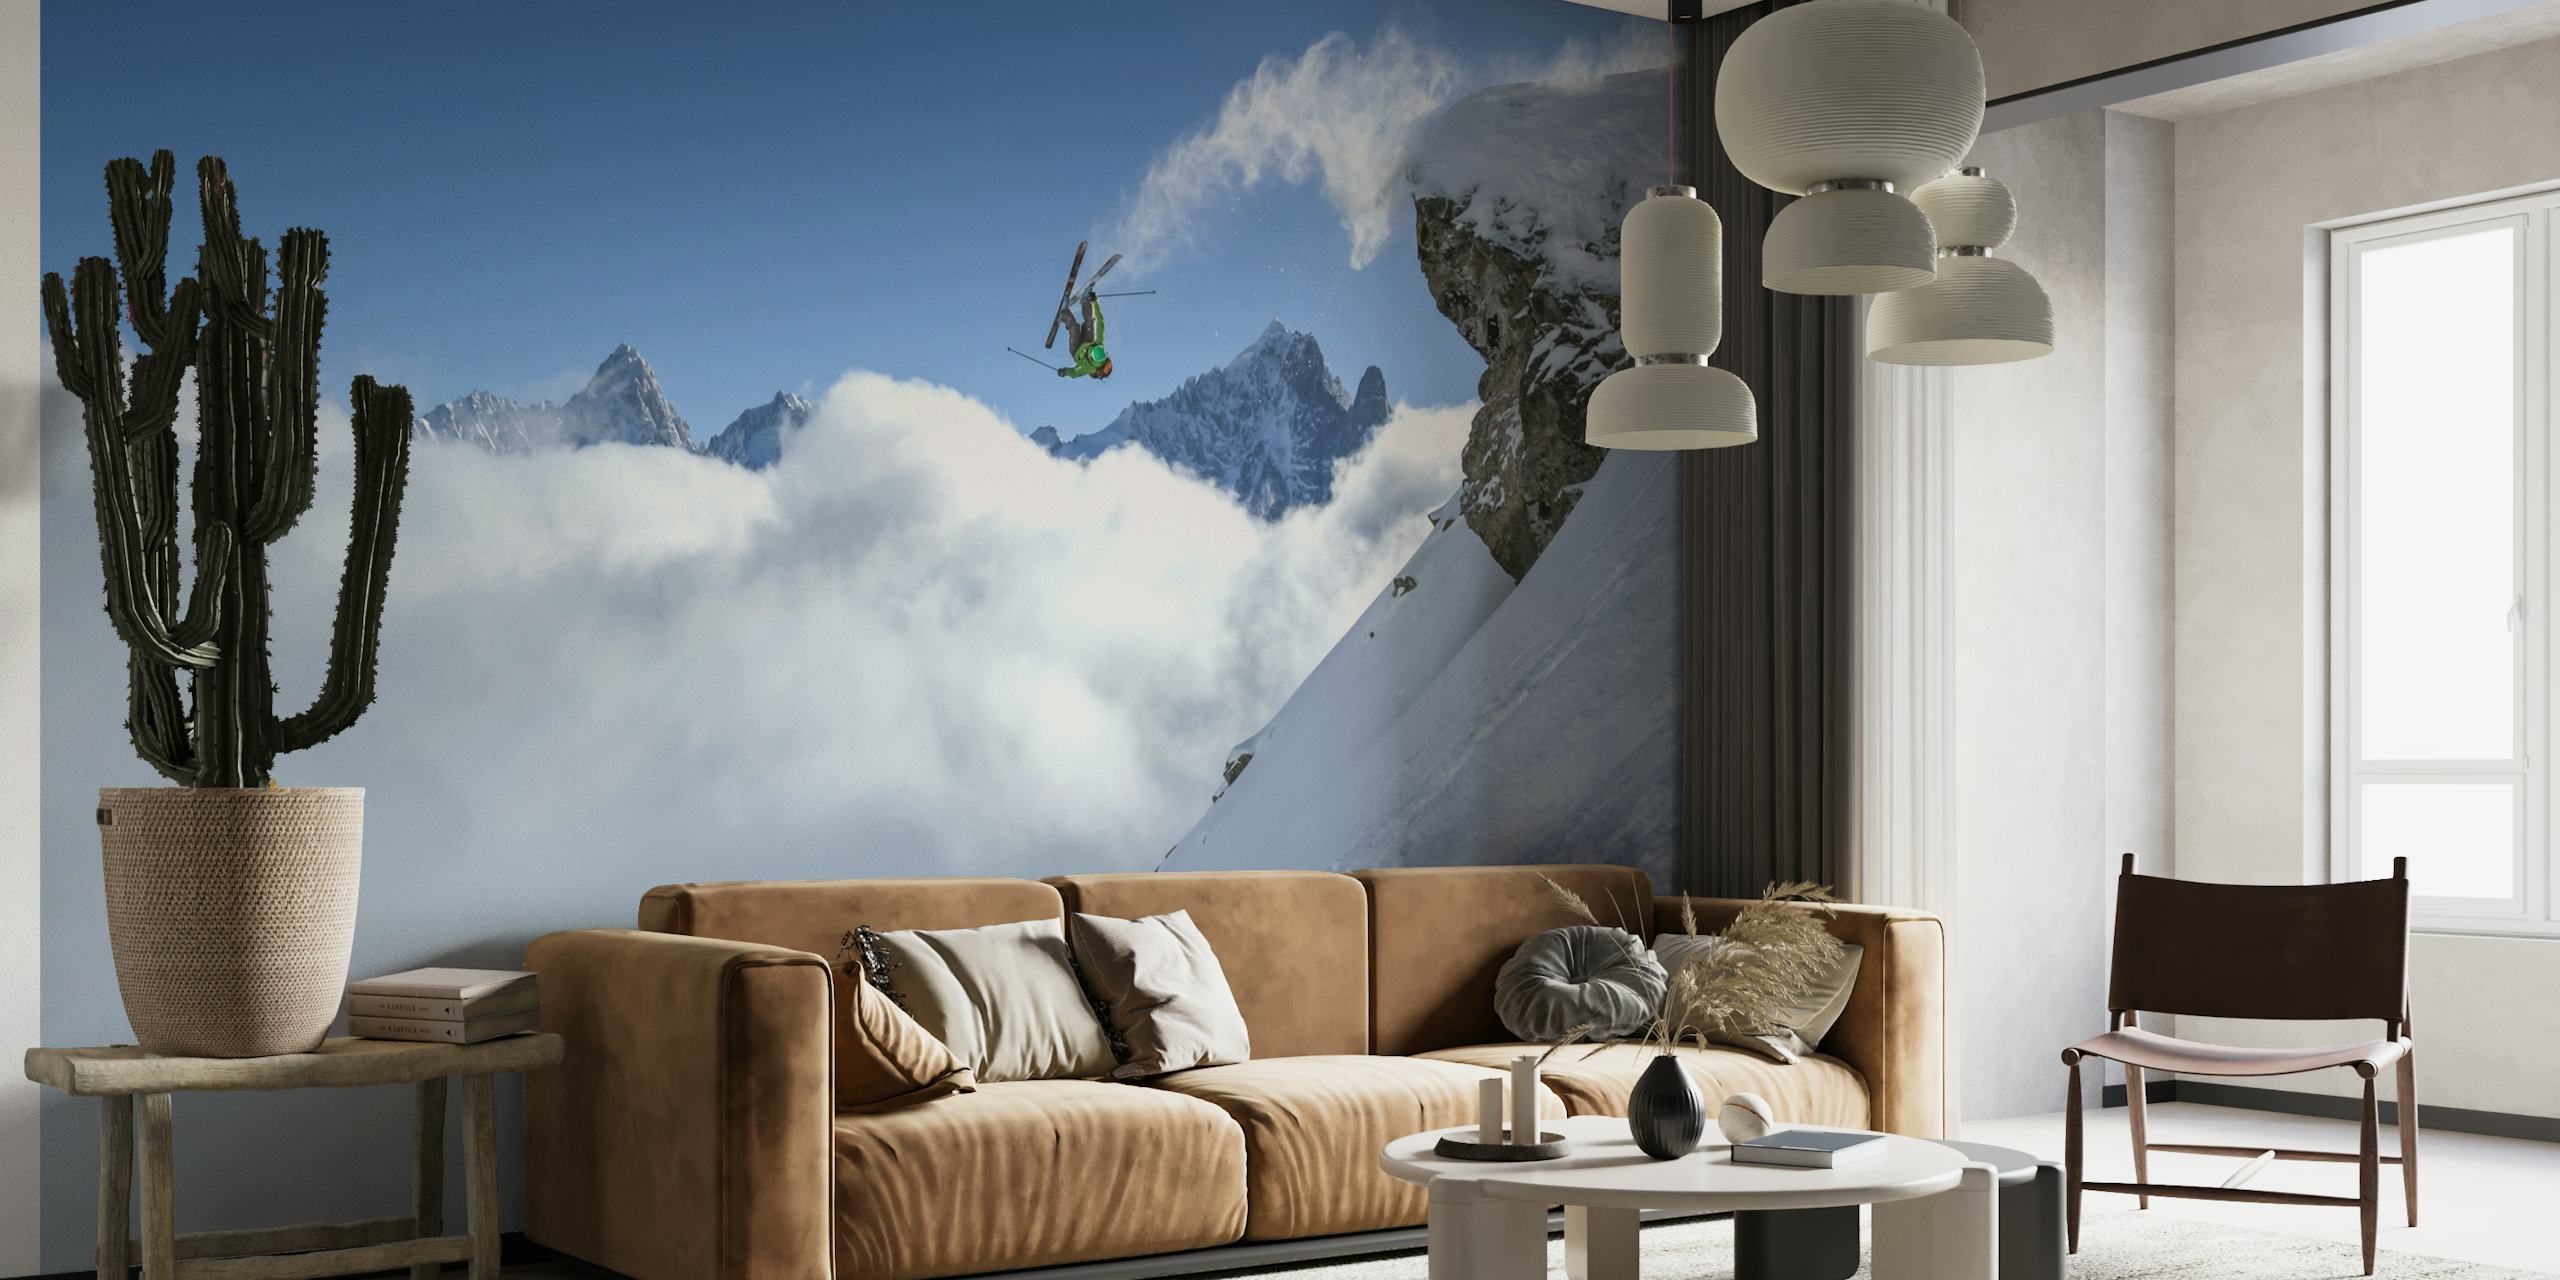 Skiër die een lus uitvoert op besneeuwde berg met wolken eronder